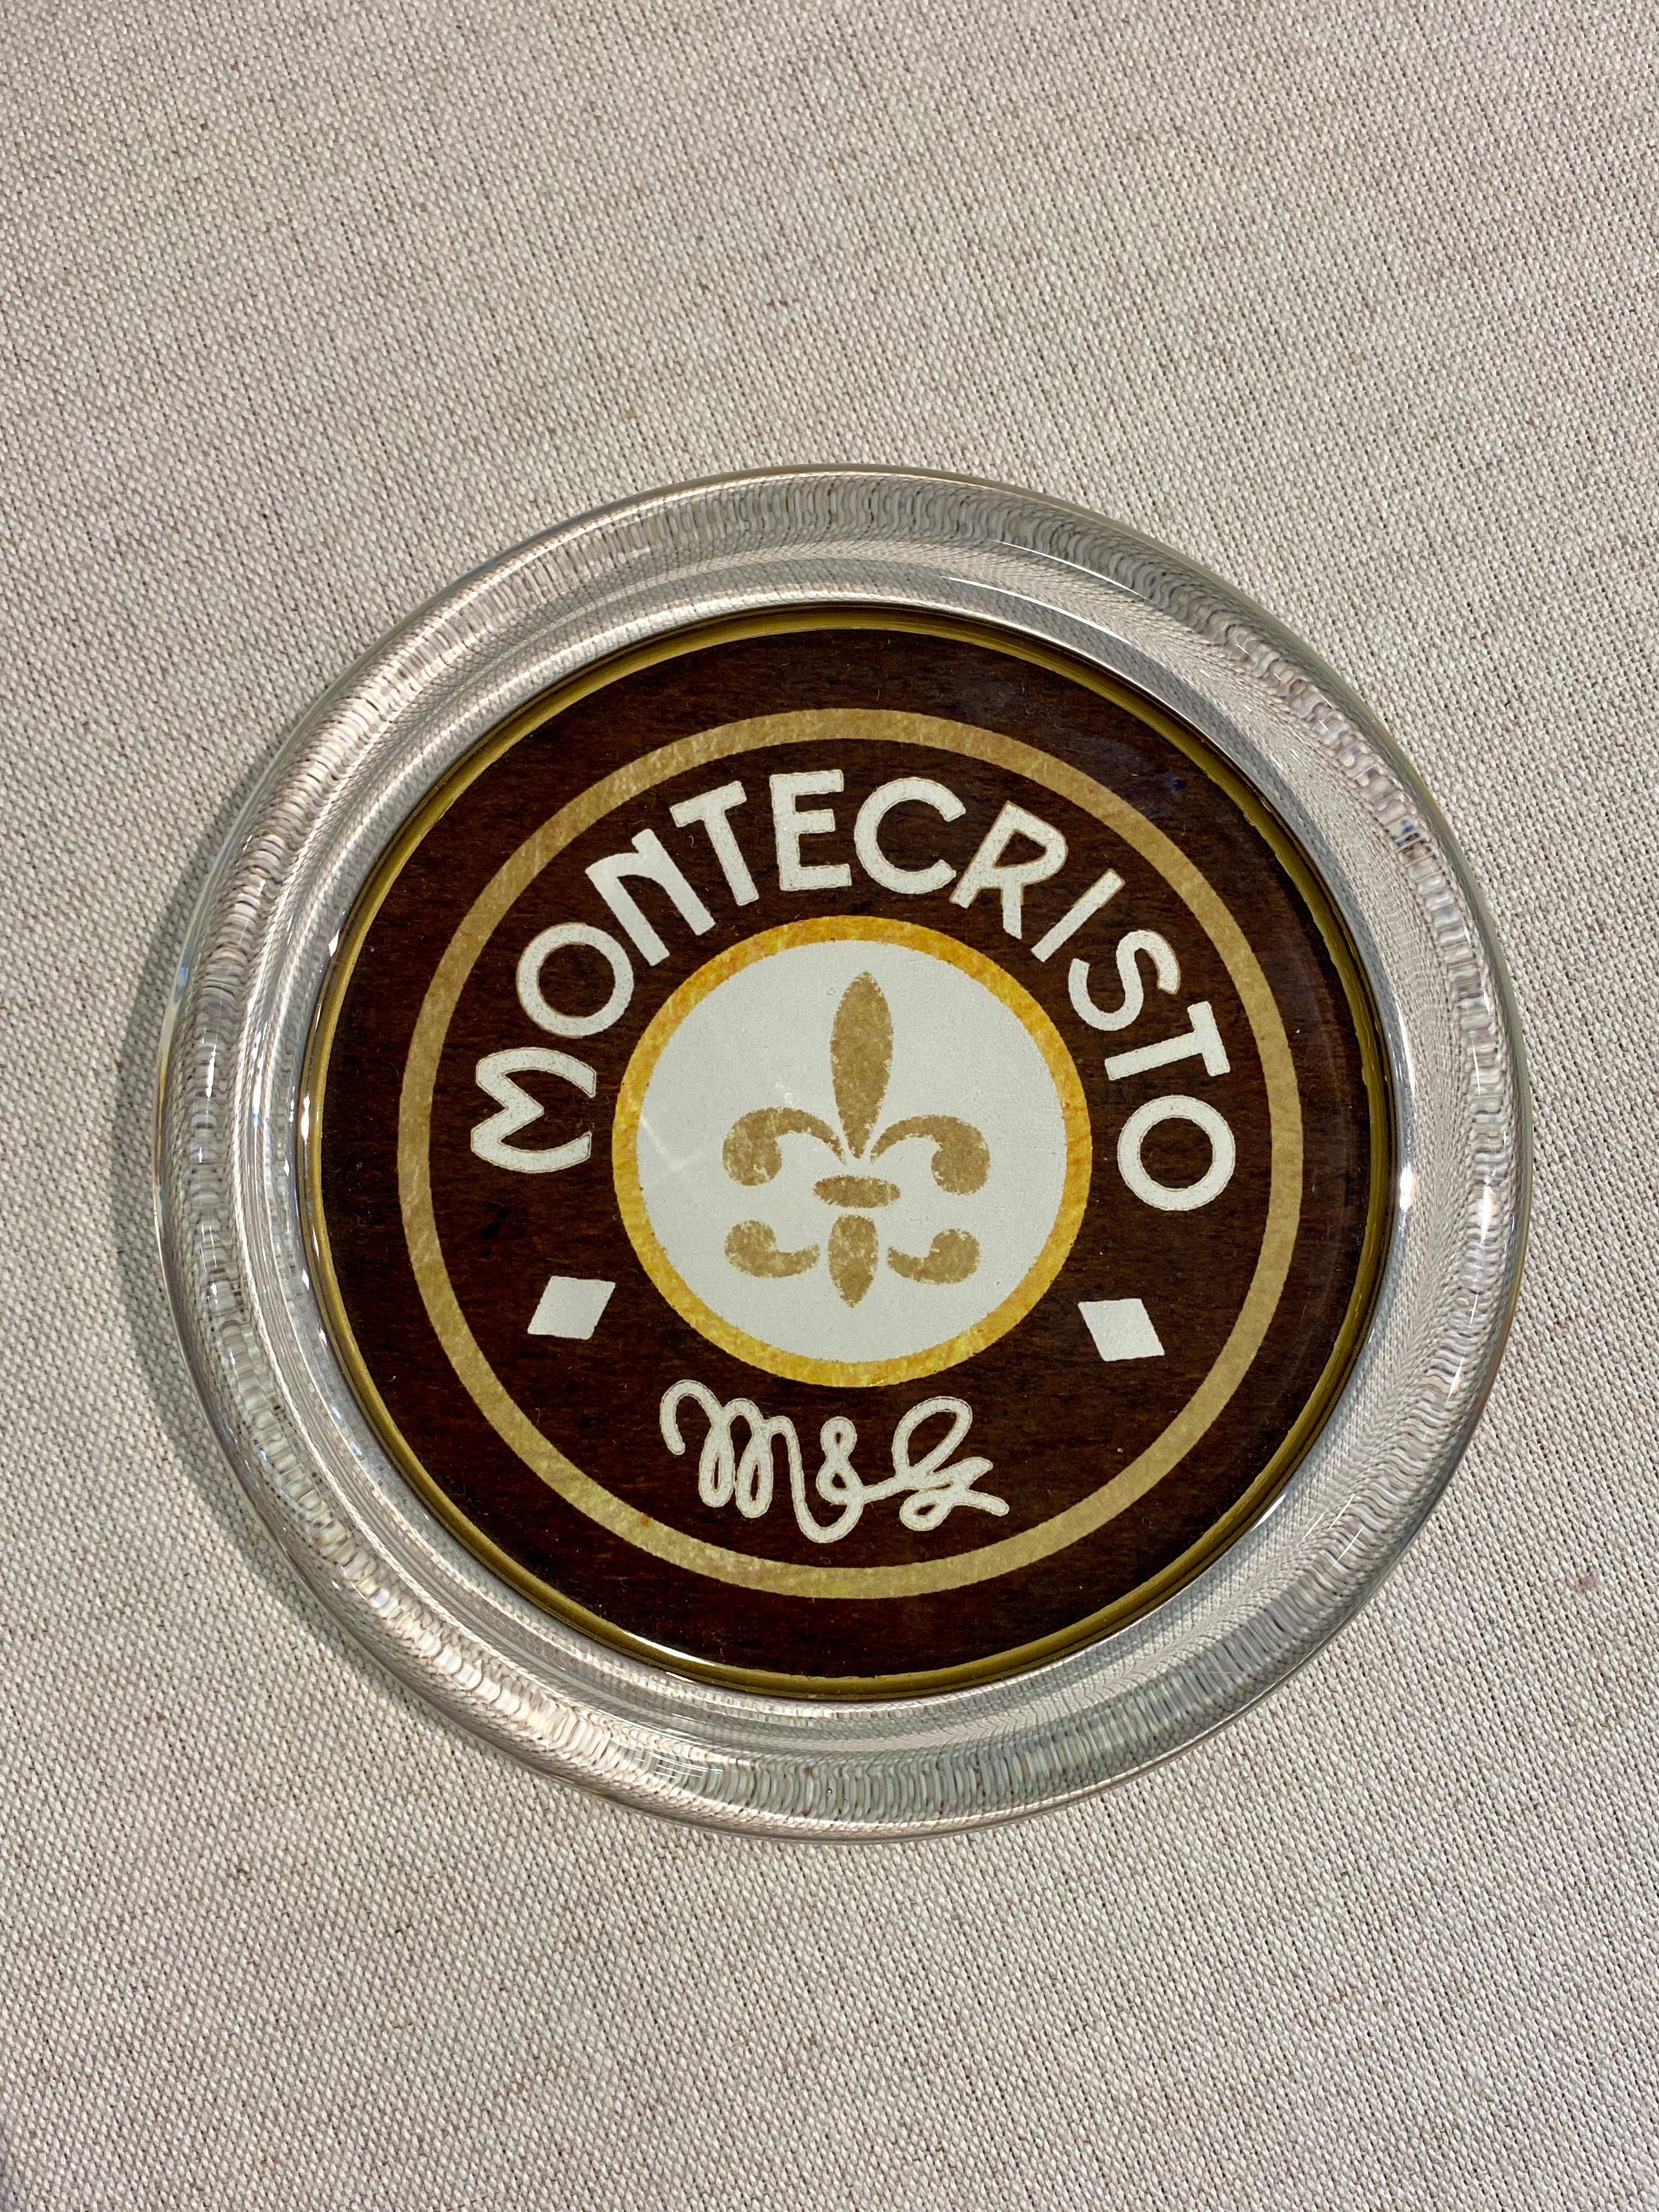 Montecristo Coaster